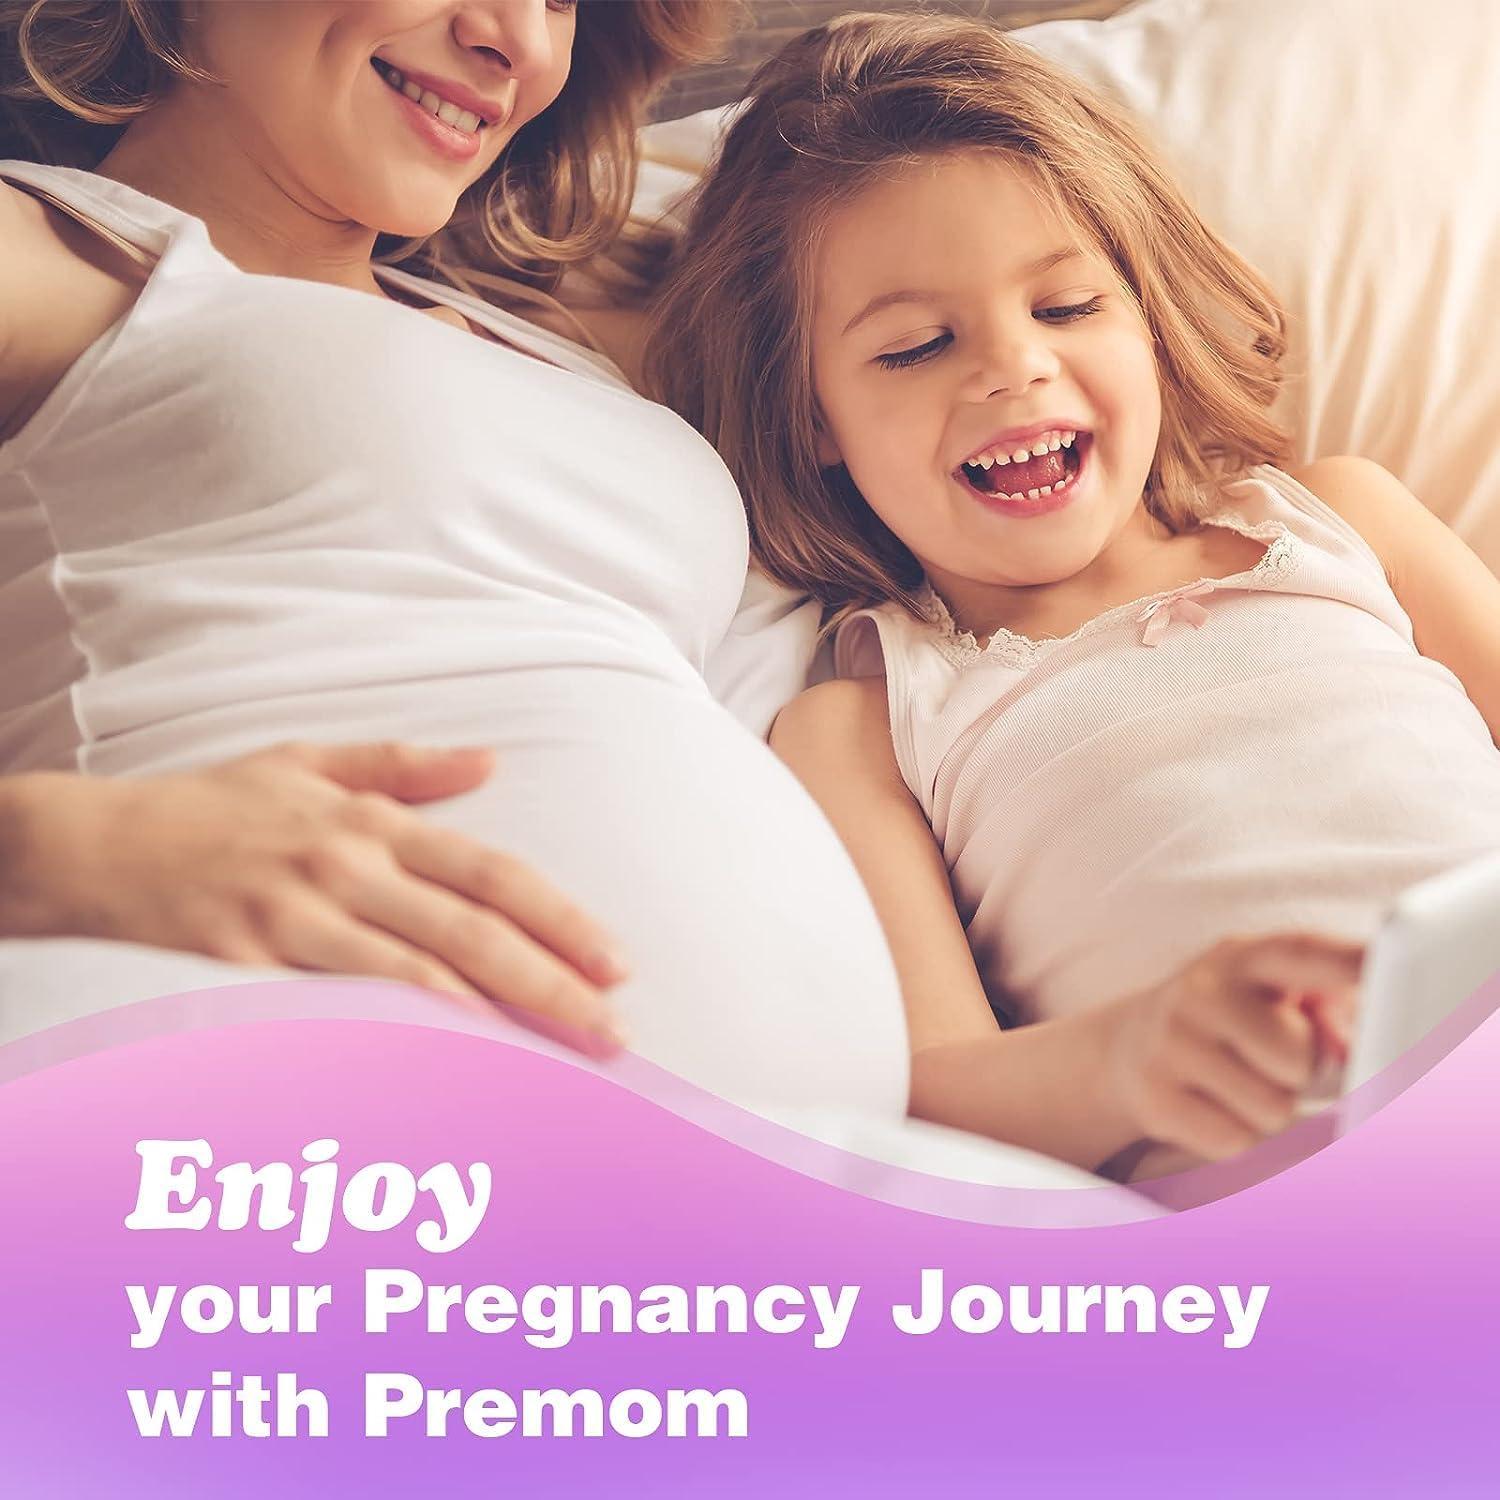 Test de Embarazo Easy@Home: 10 Pruebas de HCG 10 mIU/ml Utrasensibles para  detedcción de embarazo temperana - Desarrollado por Premom APP